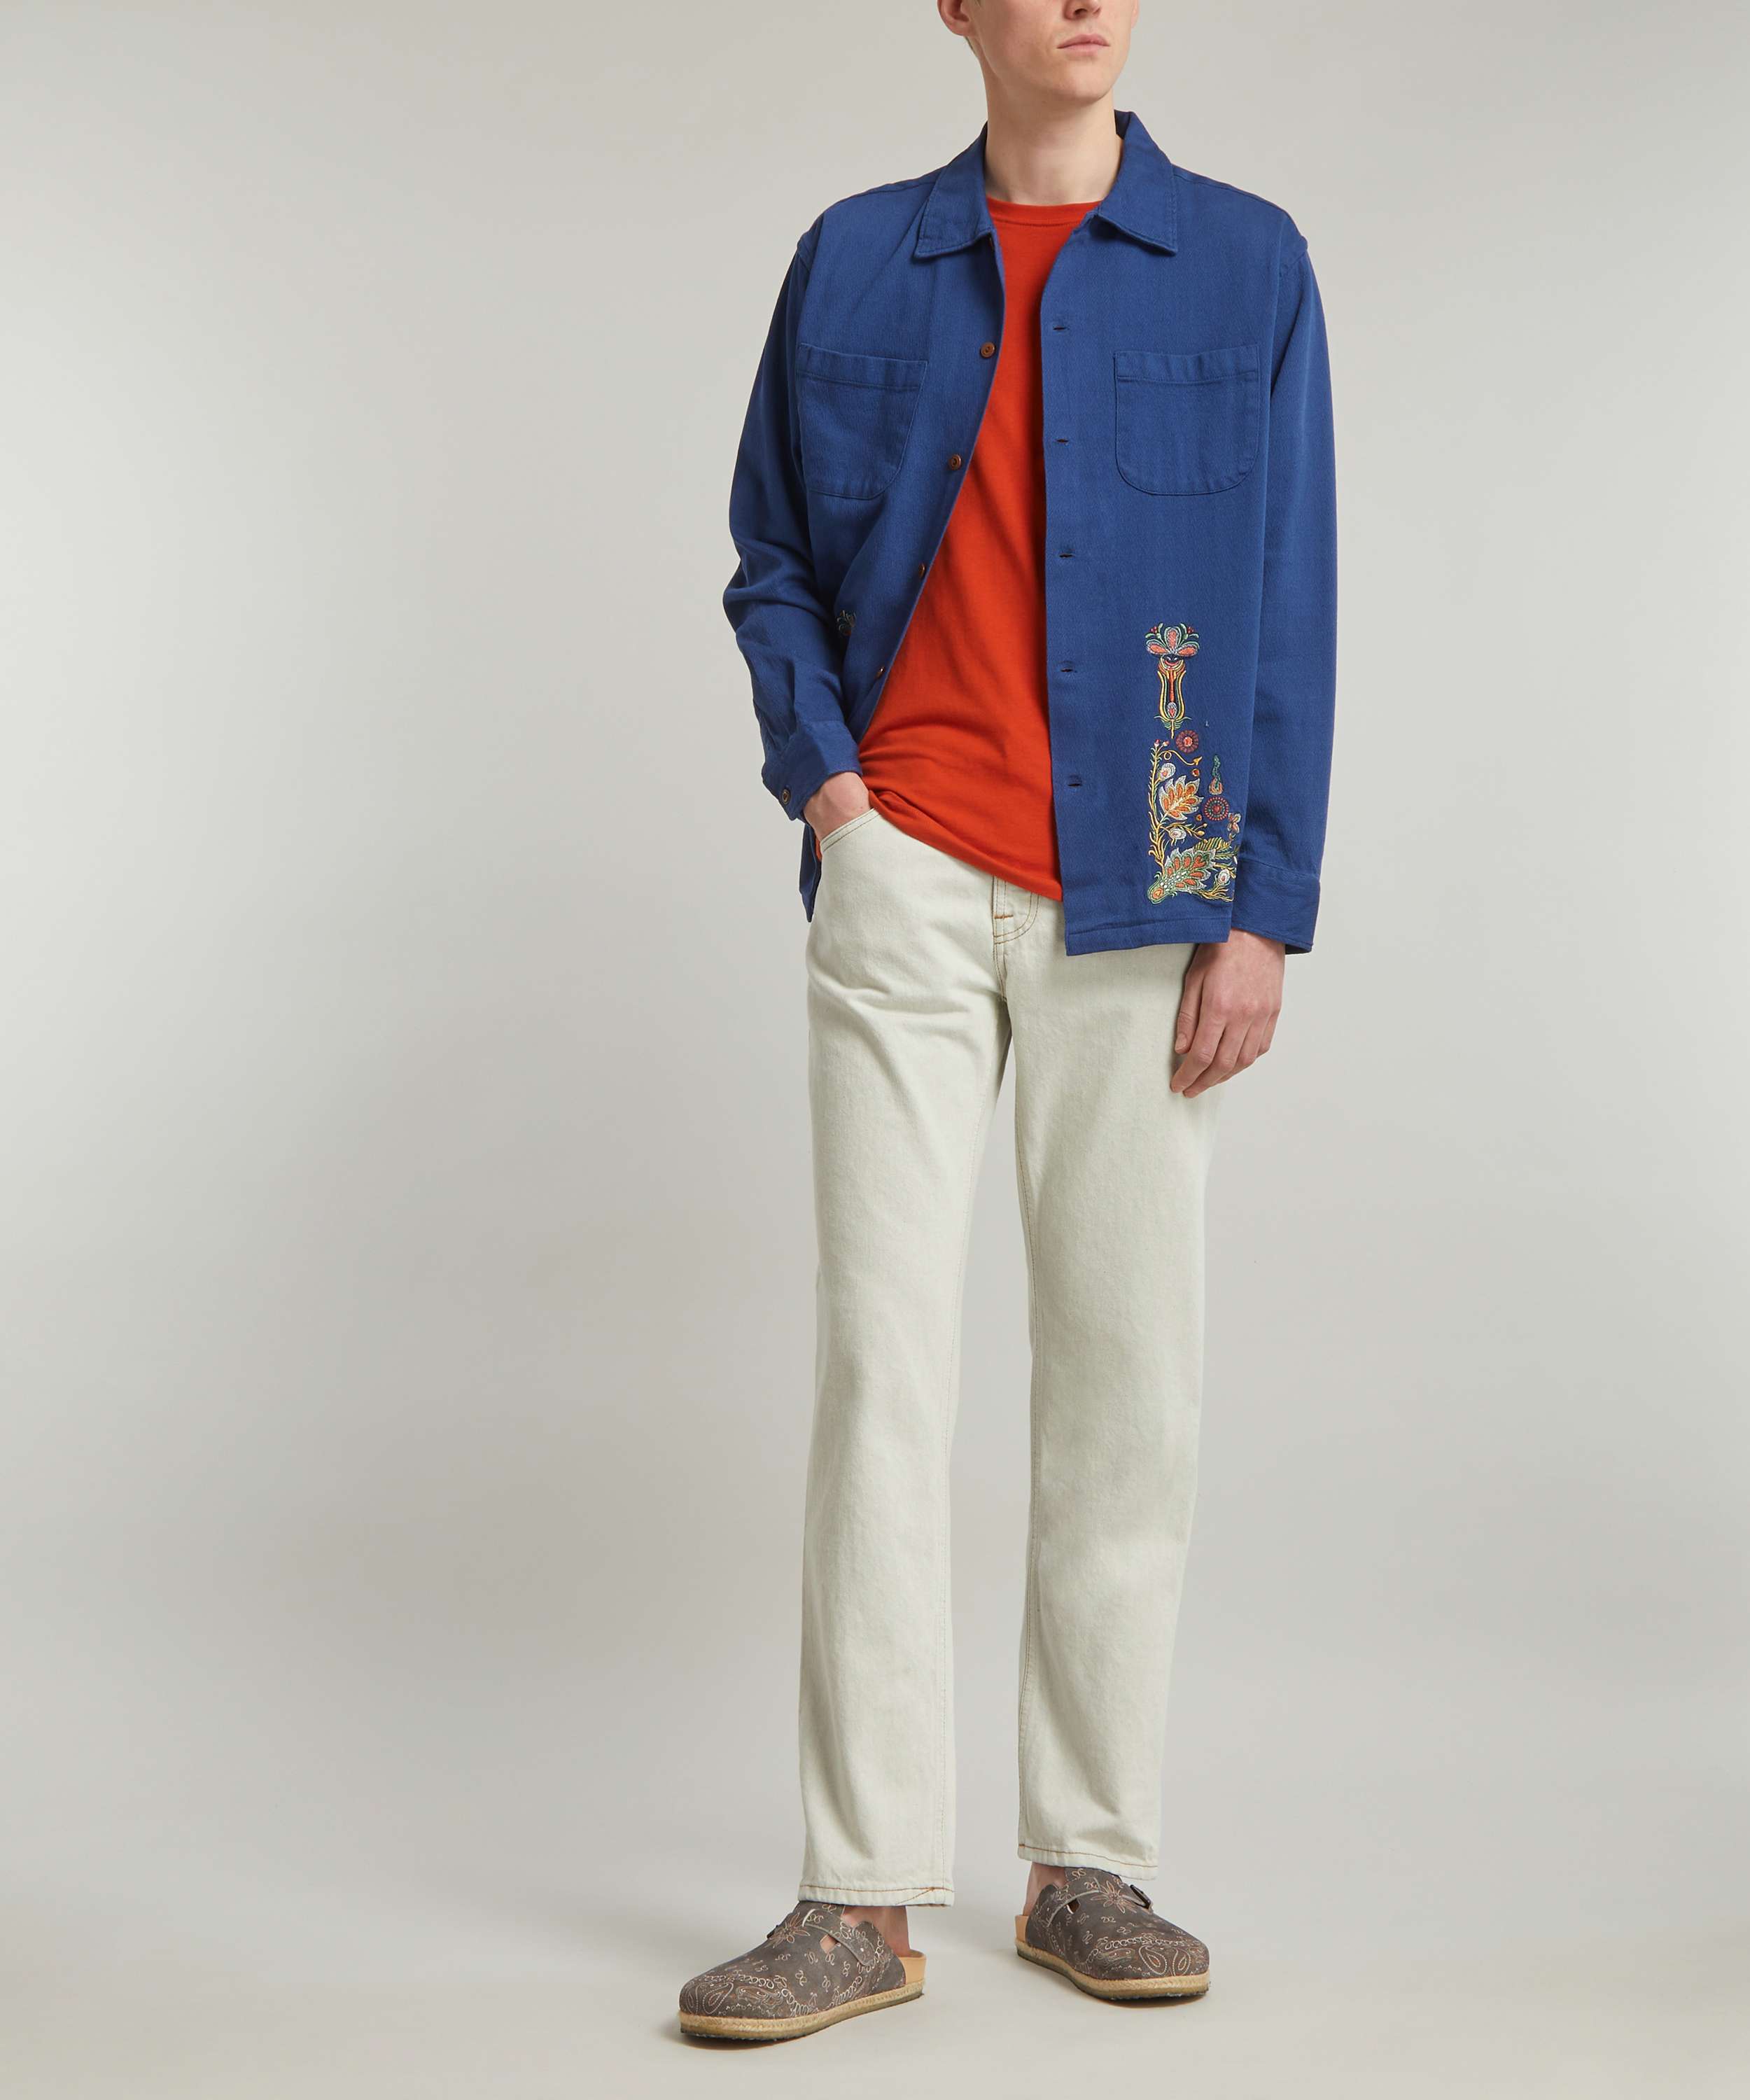 Polo Jeans Company Vintage Denim Purse 90s Y2K Bag Floral Ralph